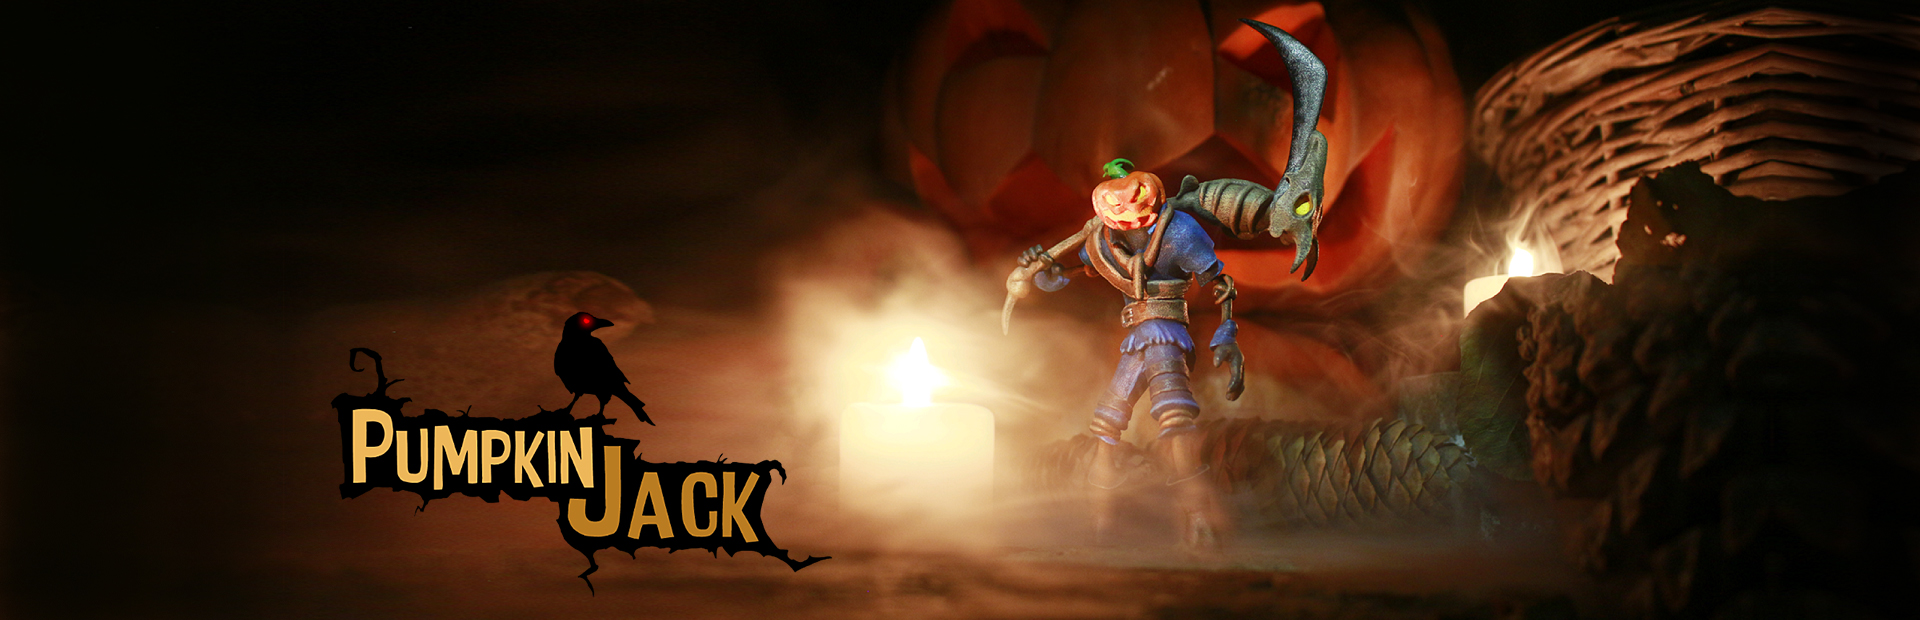 دانلود بازی Pumpkin Jack برای PC | گیمباتو